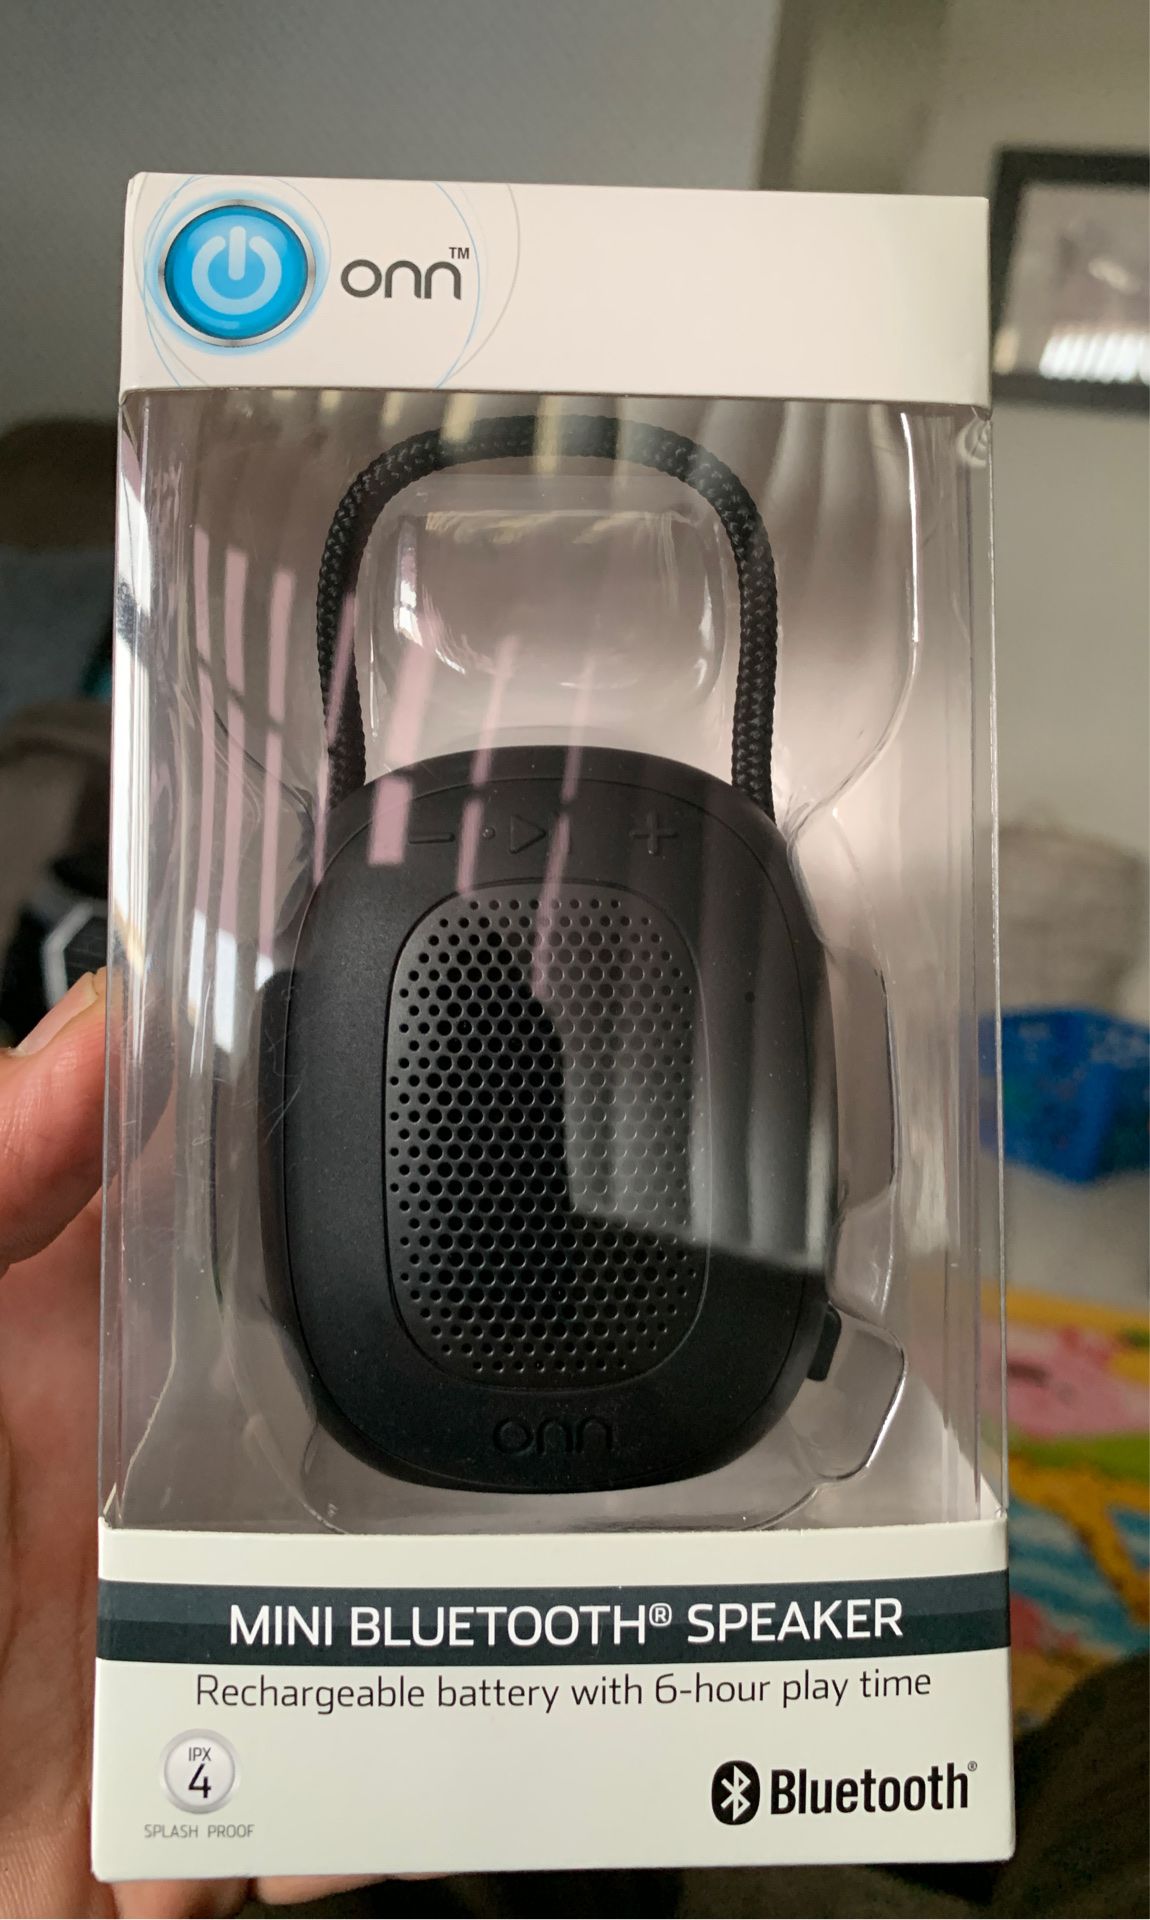 Mini Bluetooth speaker ONN